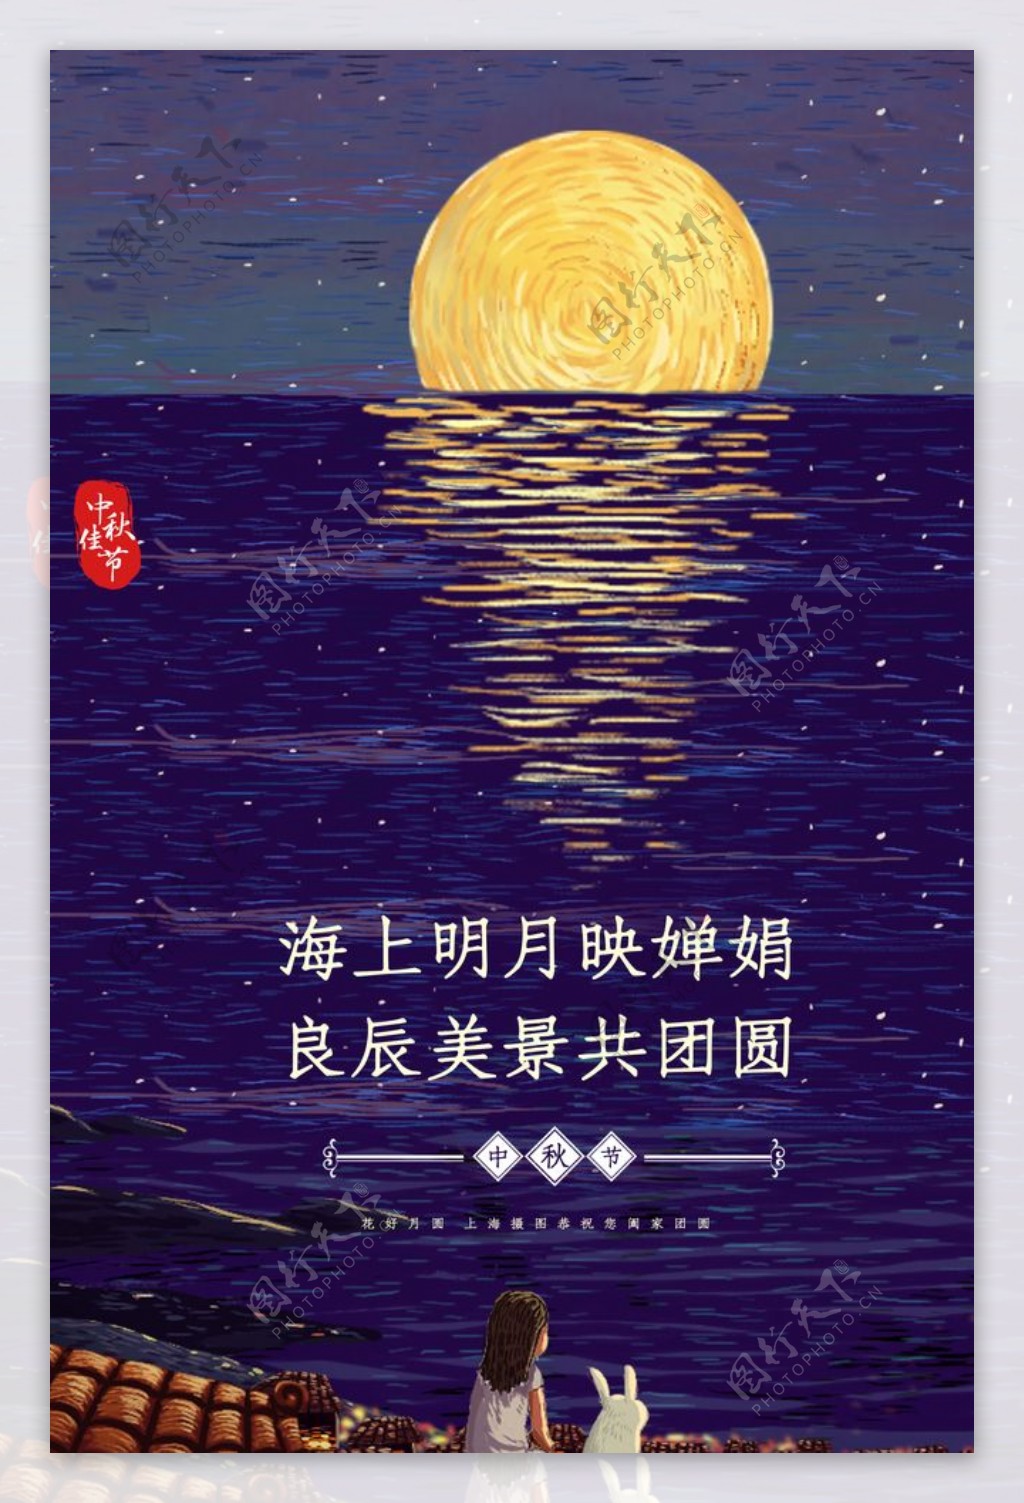 中秋节日传统活动海报素材图片